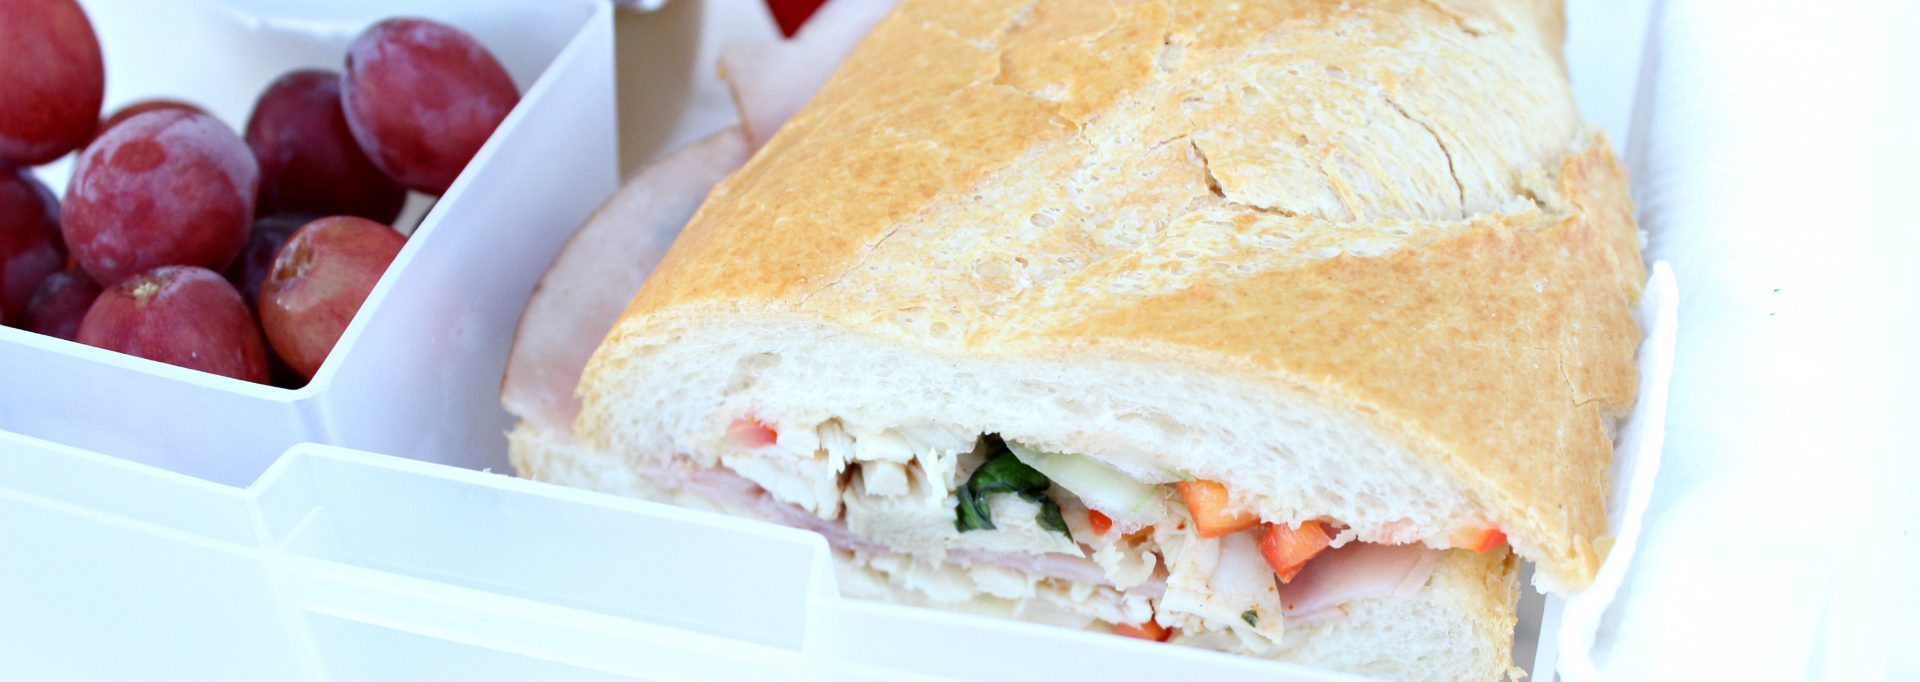 Italian Roasted Chicken Sandwich